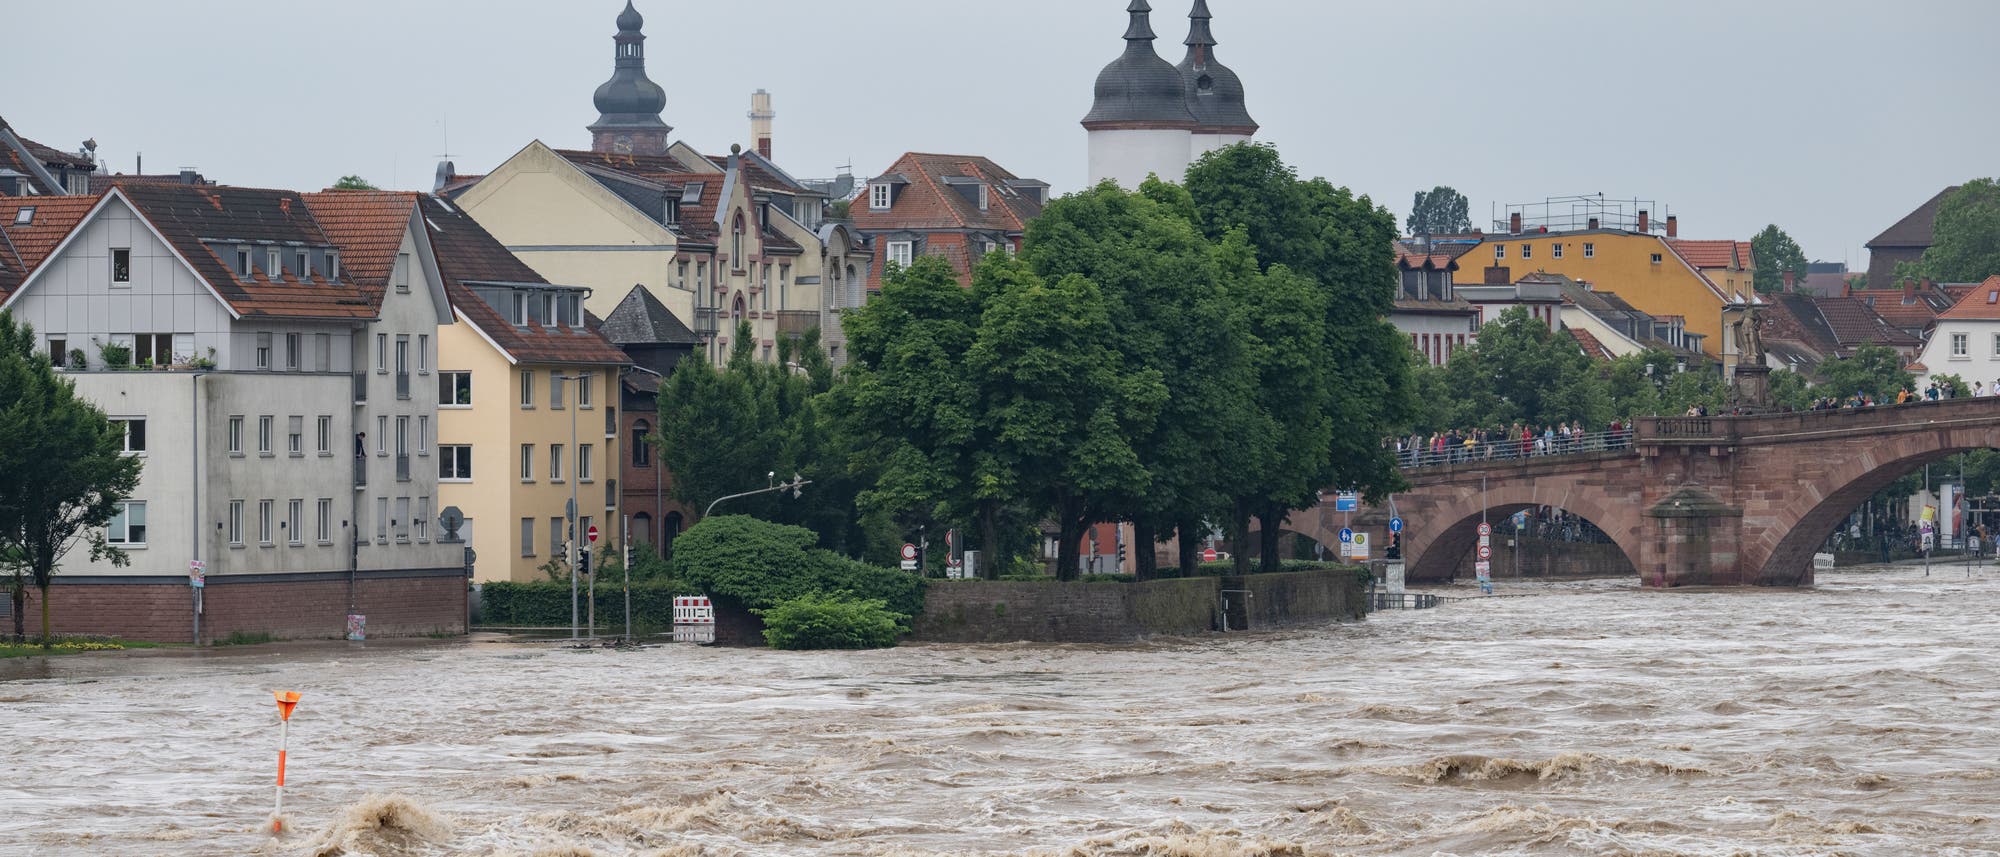 Die braunen Fluten des Neckars schießen durch Heidelberg und überfluten Teile der Altstadt. Der Blick geht von Osten in Richtung alte Brücke, auf der zahlreiche menschen stehen. Links ist die Altstadt mit verschiedenen Gebäuden zu sehen, darunter auch der Turm der Heiliggeistkirche